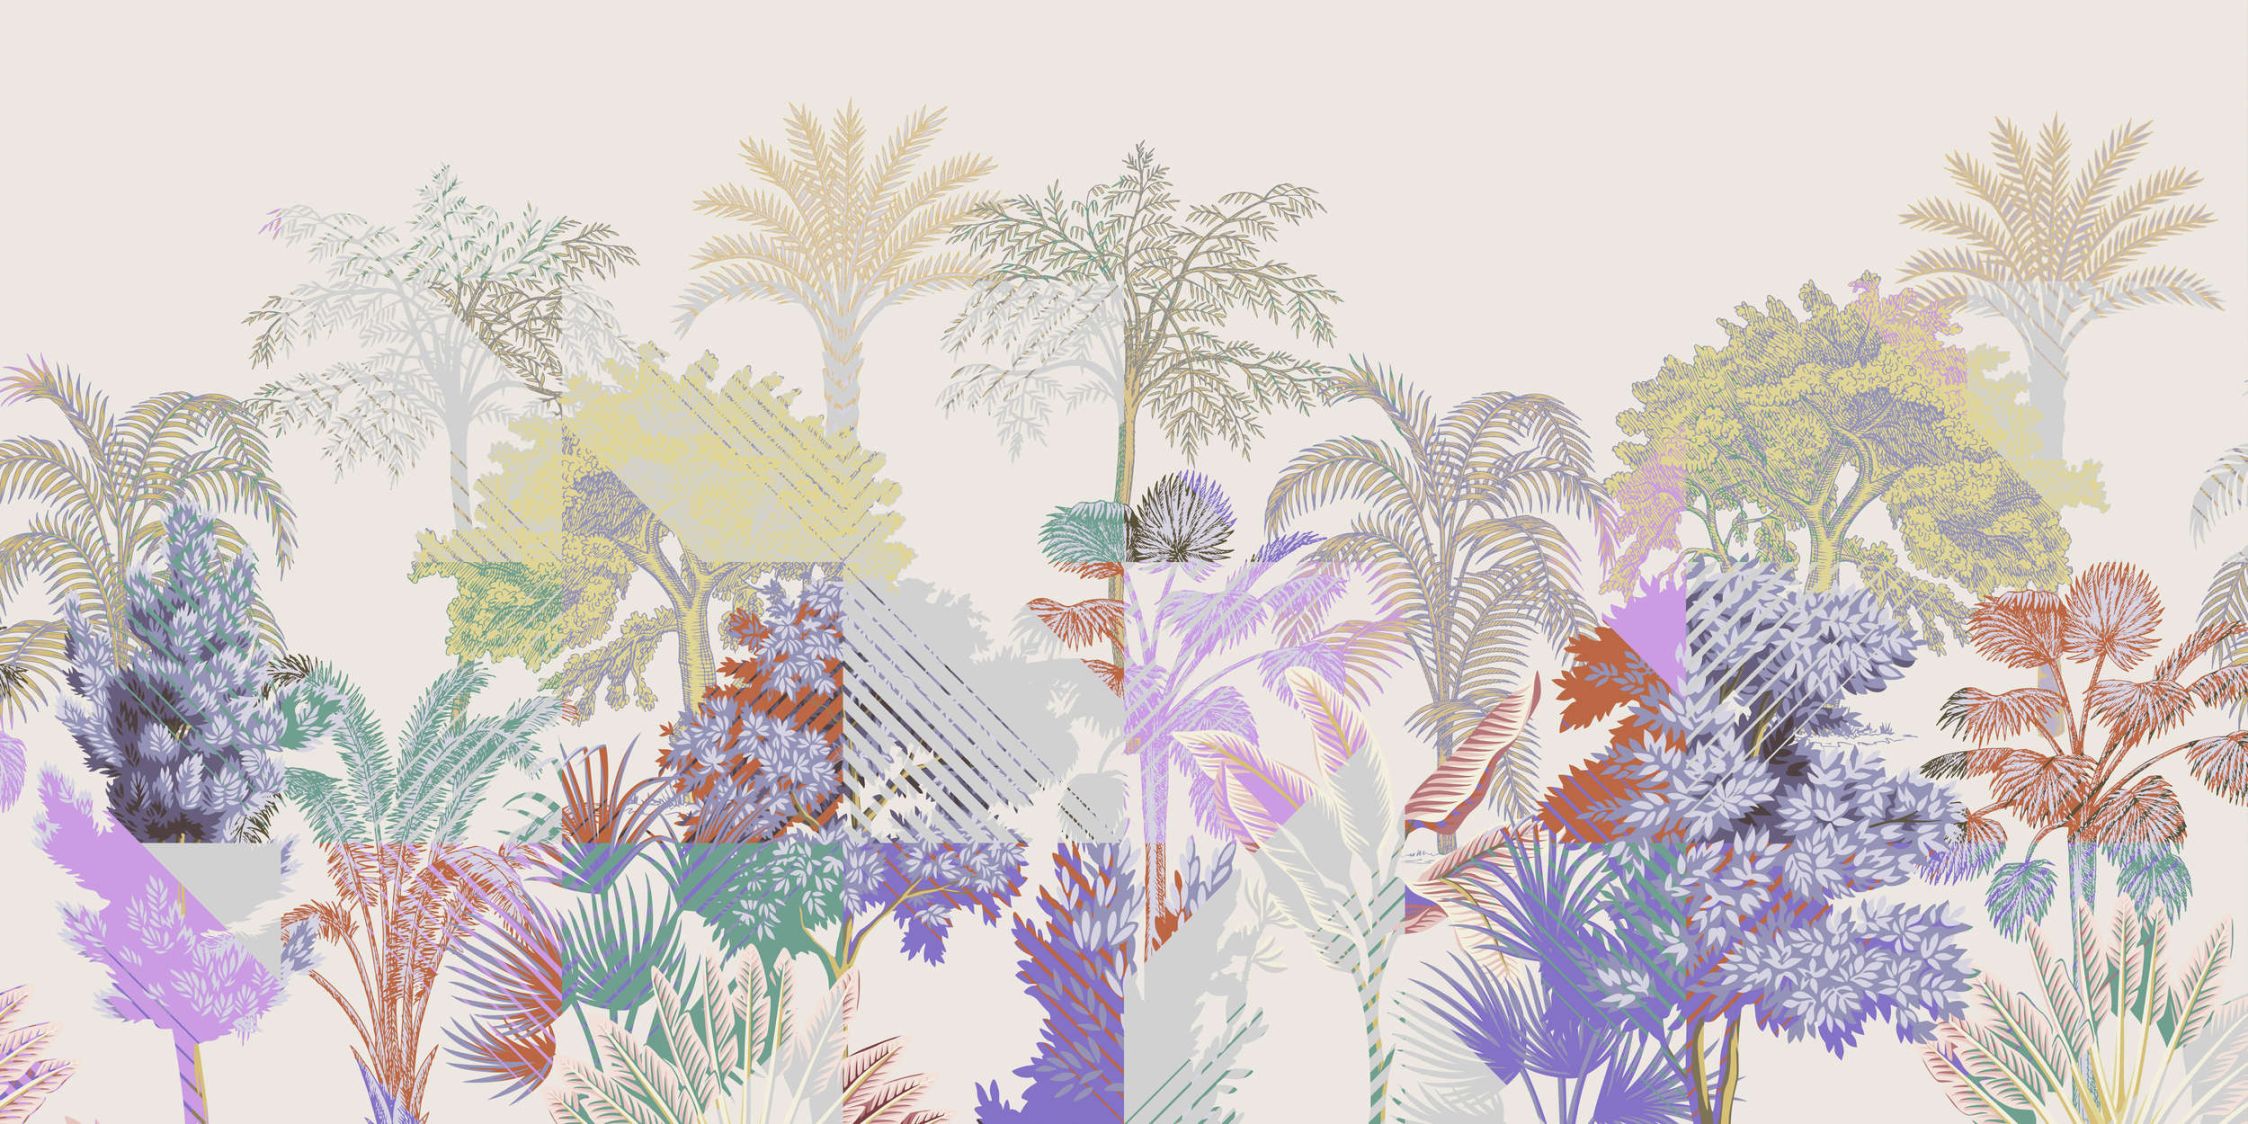             Digital behang »esplanade 2« - jungle patchwork met struiken - kleurrijk | mat, glad vlies
        